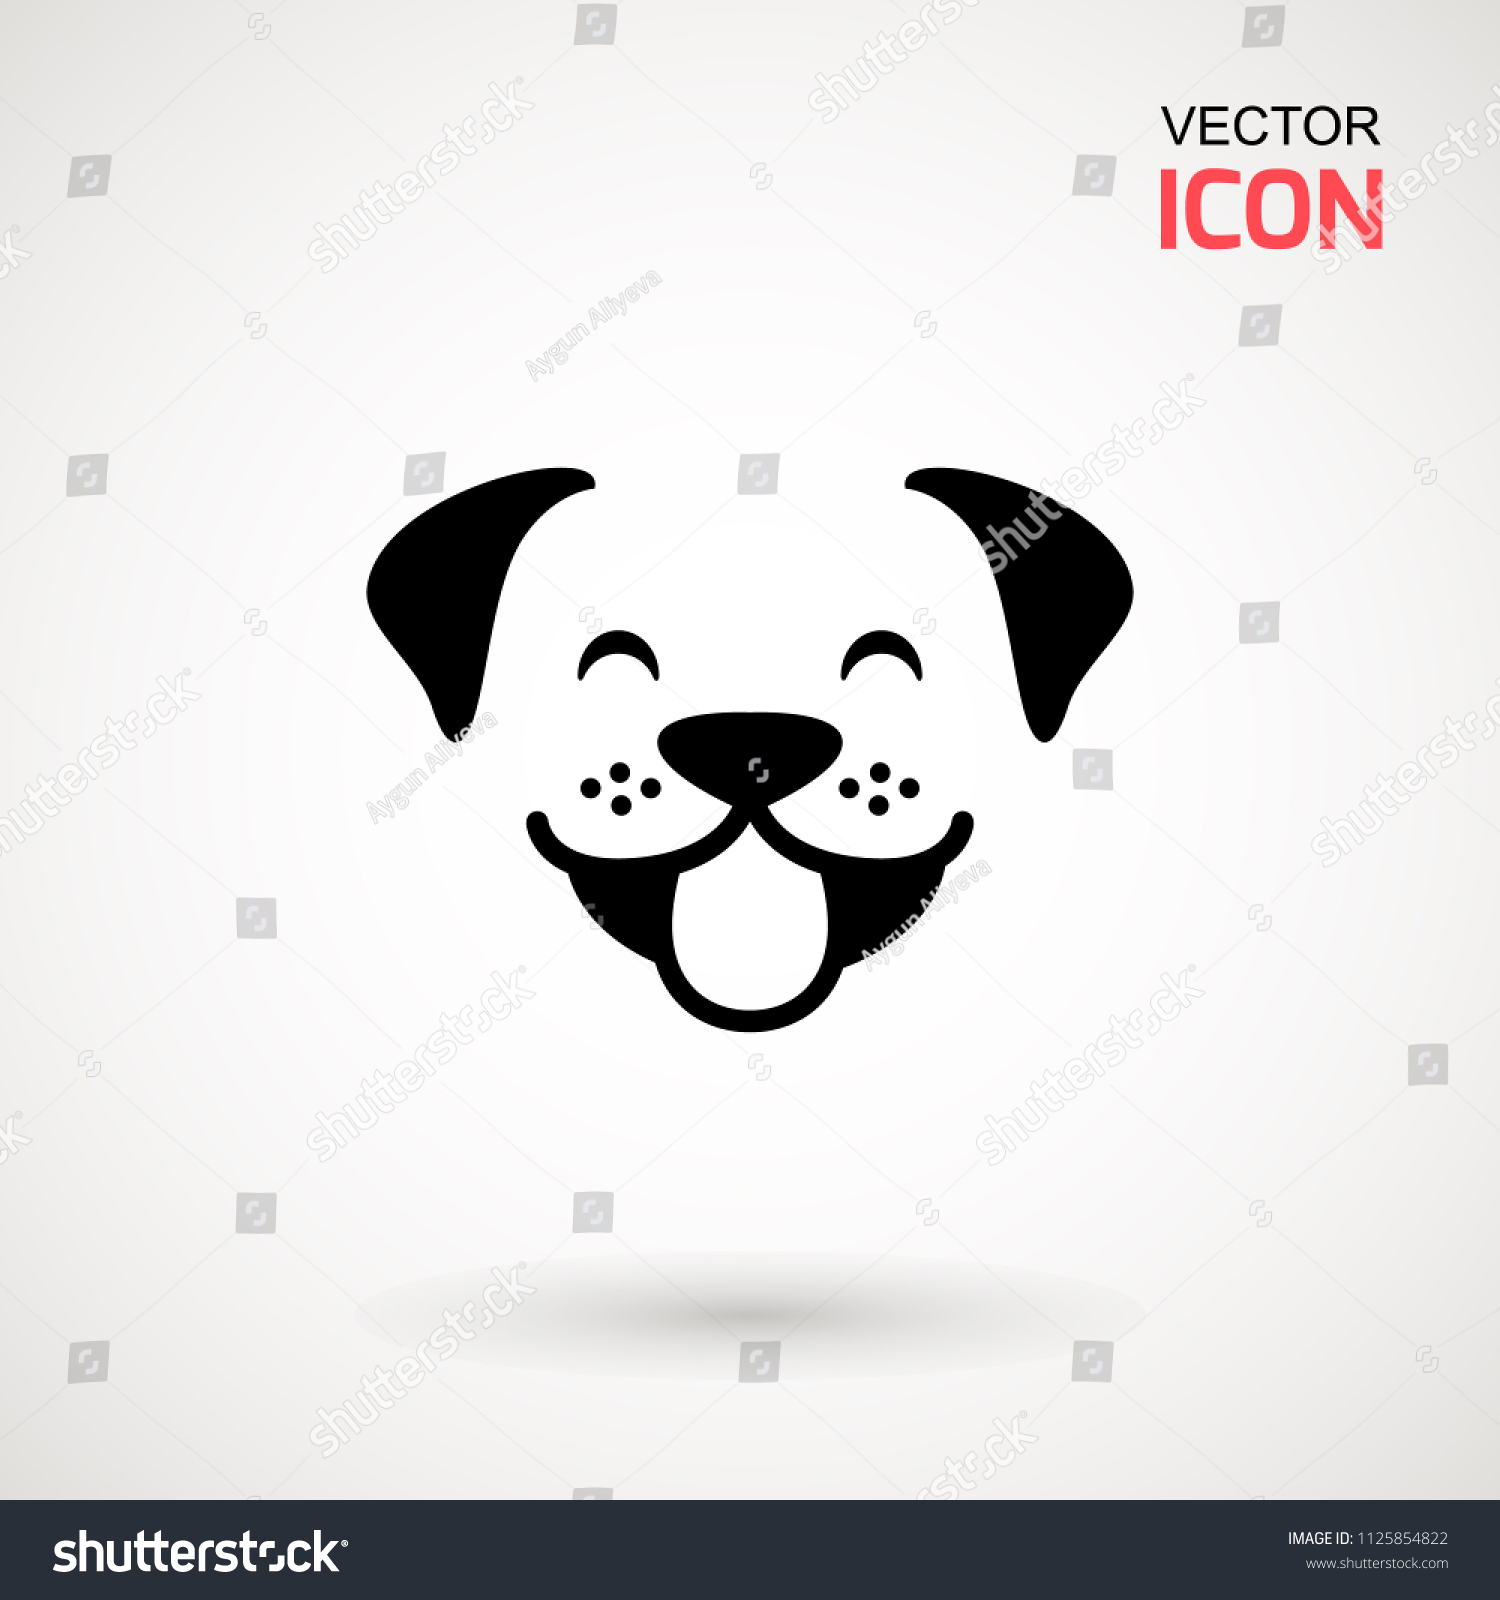 犬の頭のアイコン フラットスタイル 漫画の犬の顔 白い背景にベクターイラスト シルエットは単純 動物のロゴのコンセプト ロゴデザインテンプレート のベクター画像素材 ロイヤリティフリー